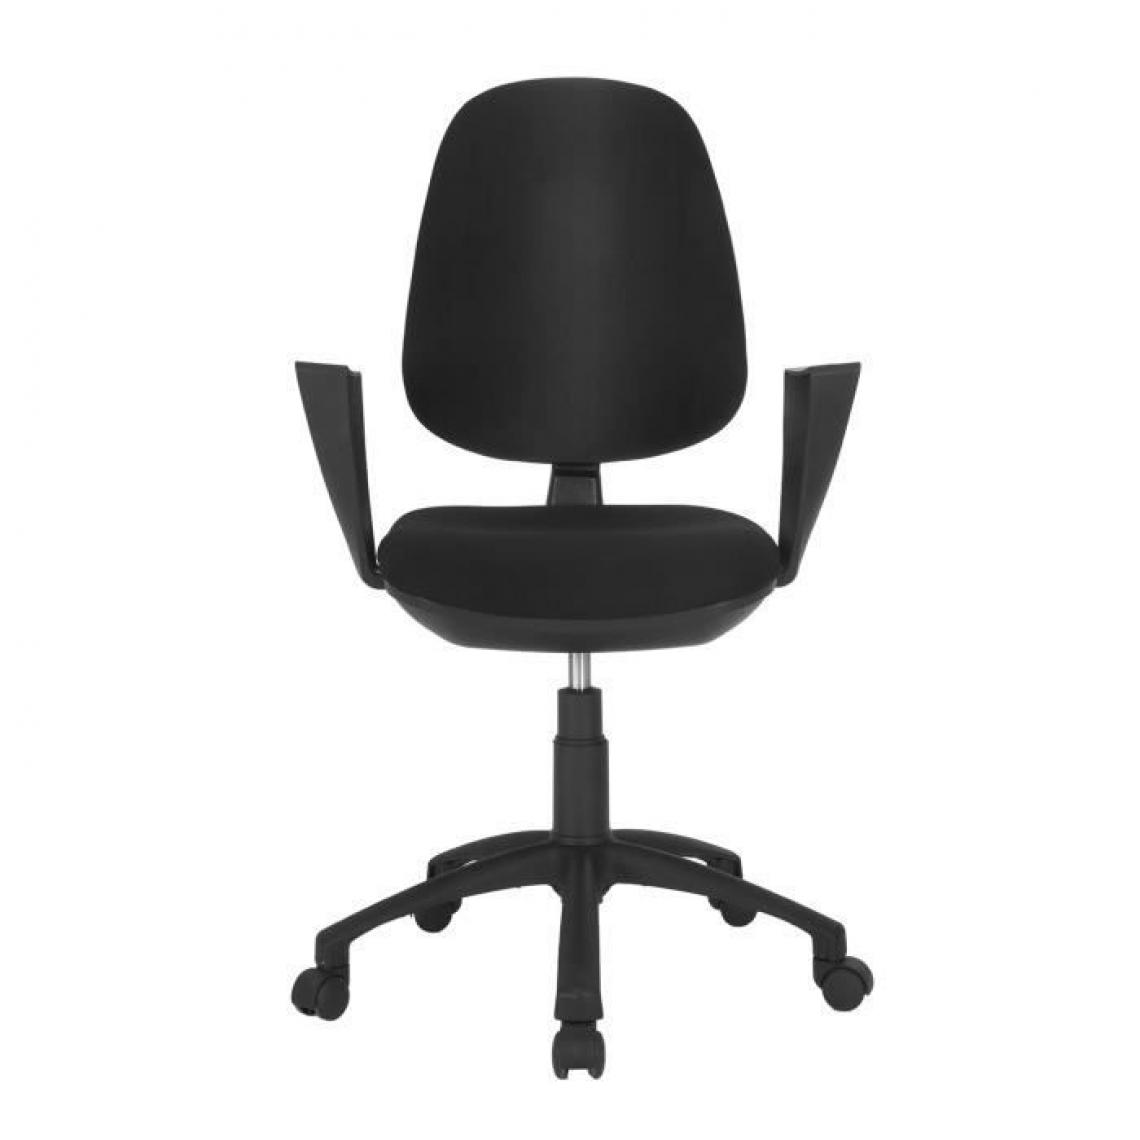 Cstore - Chaise de bureau - Tissu Noir - 65x65x105 cm - TOULOUSE - Chaises